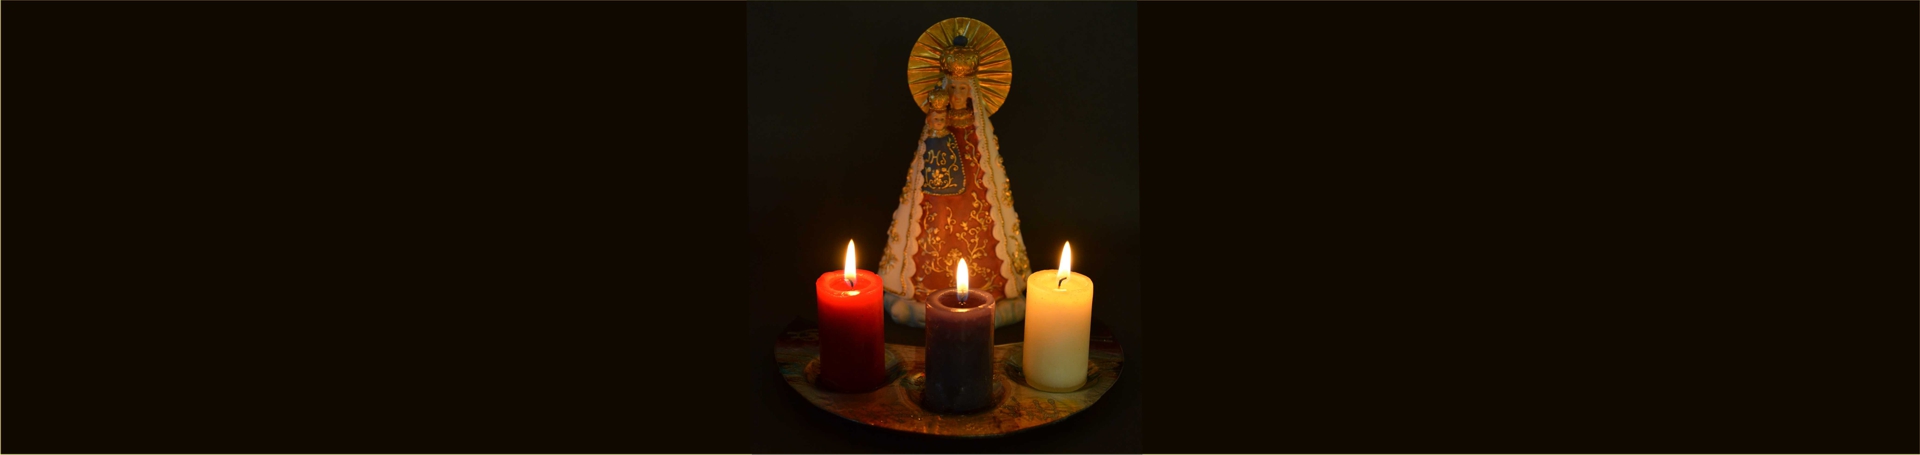 Gnadenmutter mit Kerzen